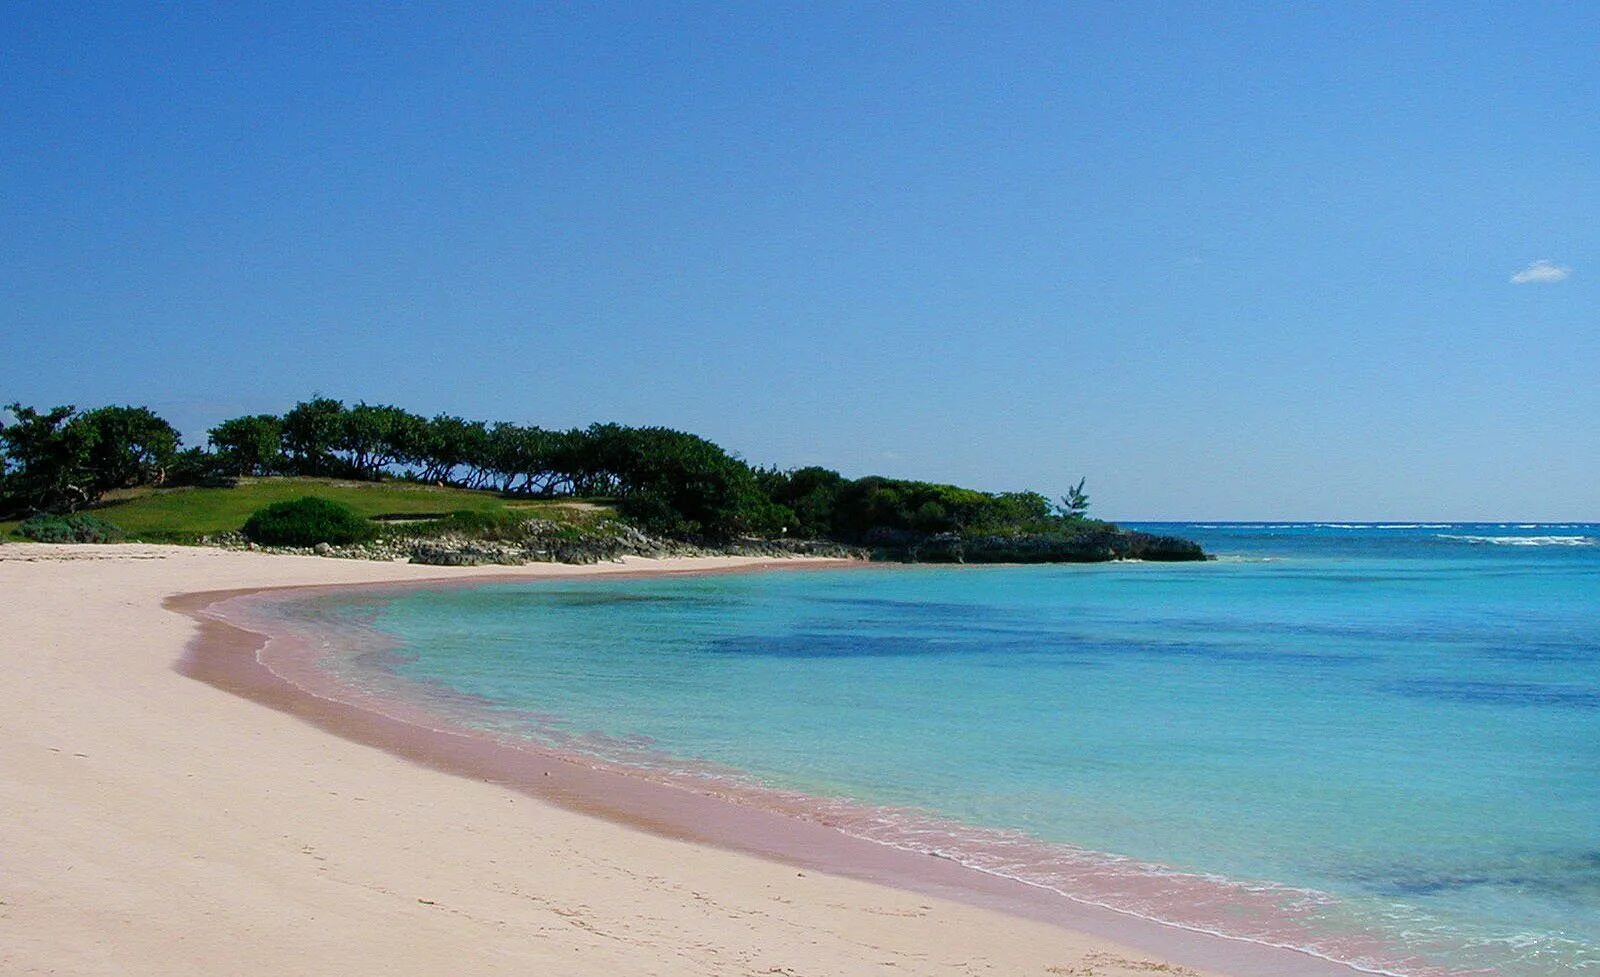 Остров Харбор Багамские острова. Pink Sands Beach Багамские острова. Харбор Айленд Багамы. Пляж Пинк Сэндс Бич Багамские острова. Harbor island